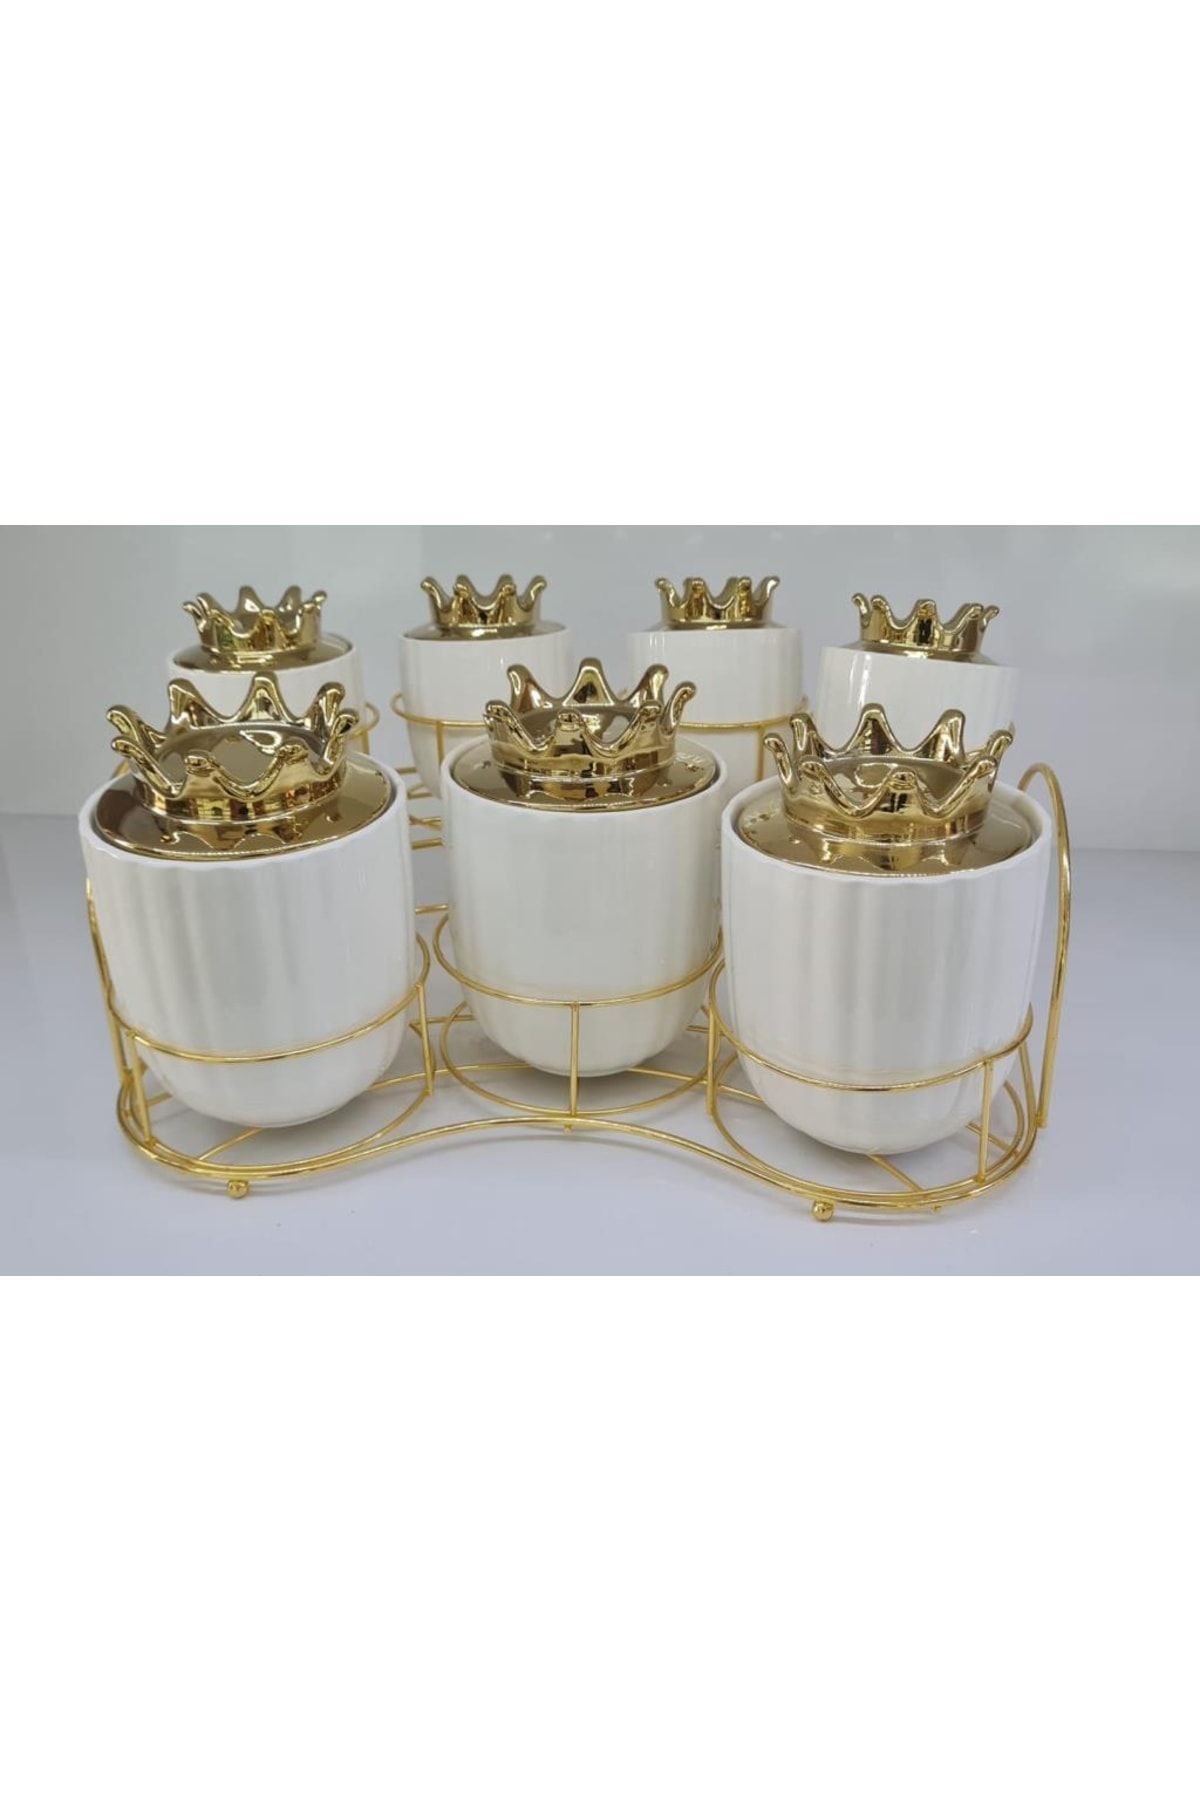 ACAR Metal Gold Standlı 7 Li Porselen Silindir Baharat Takımı Beyaz 0192